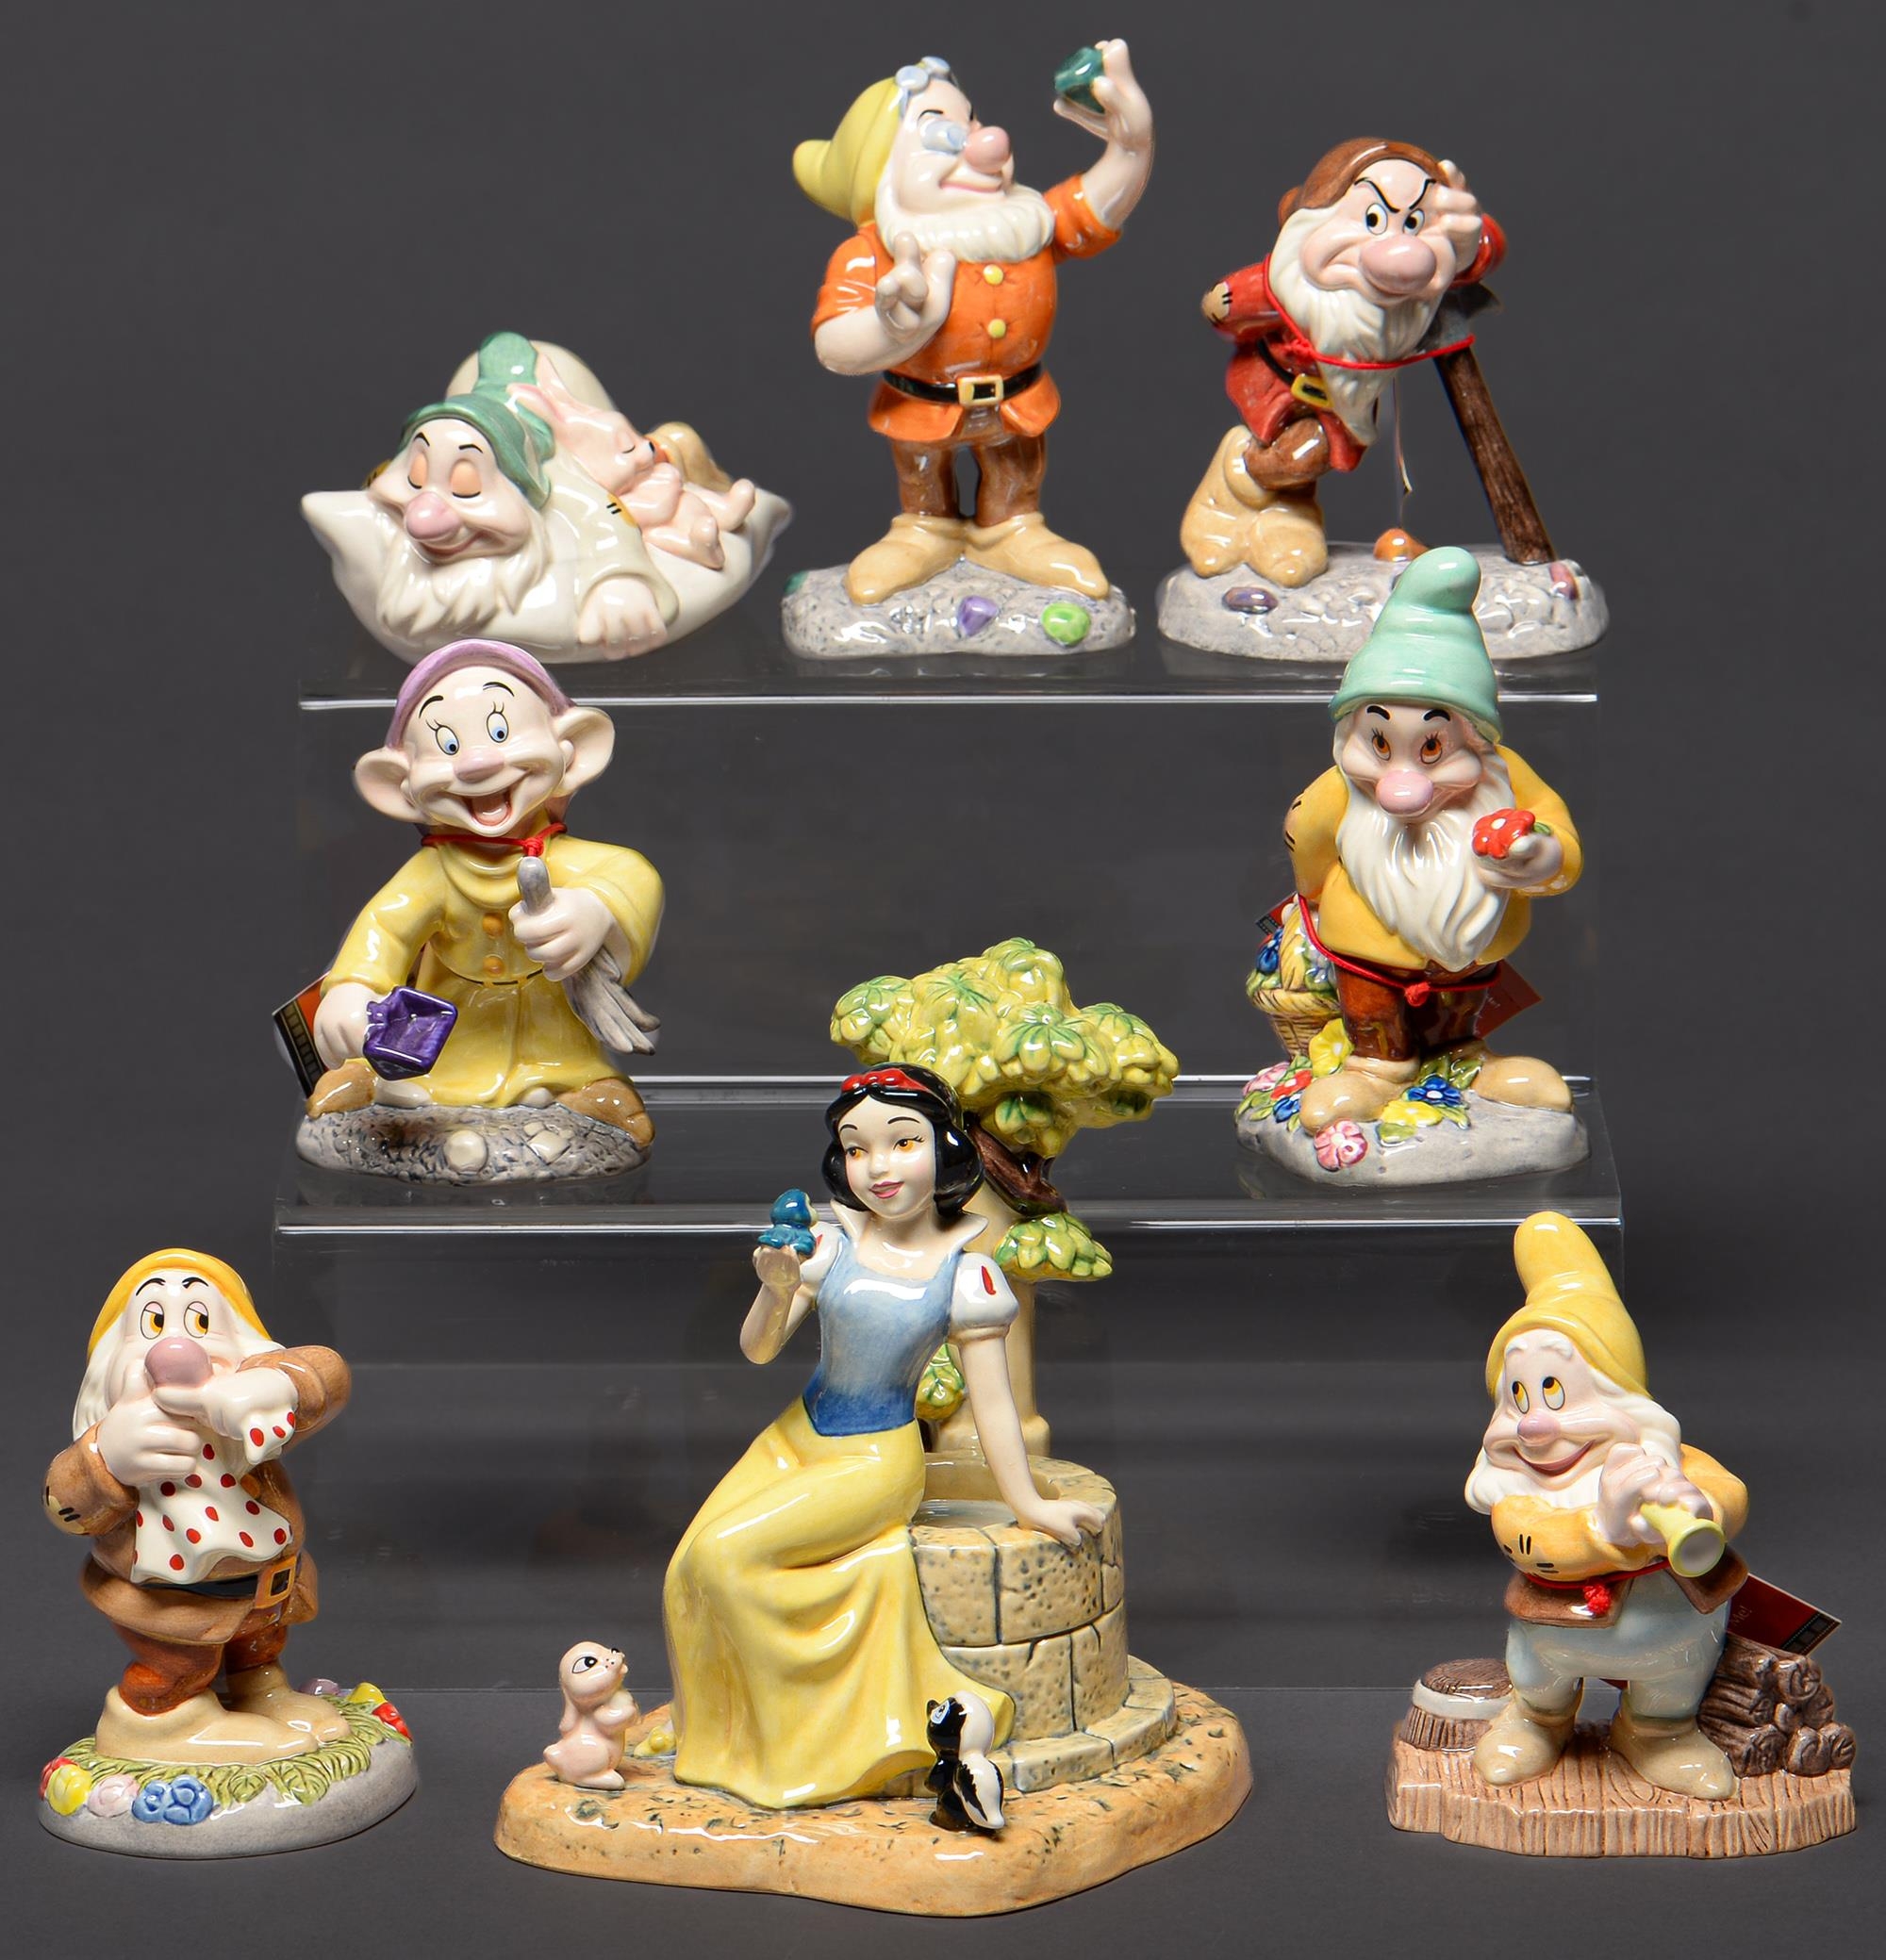 A set of Royal Doulton Disney Showcase figures of Snow White and the Seven Dwarves, Snow White